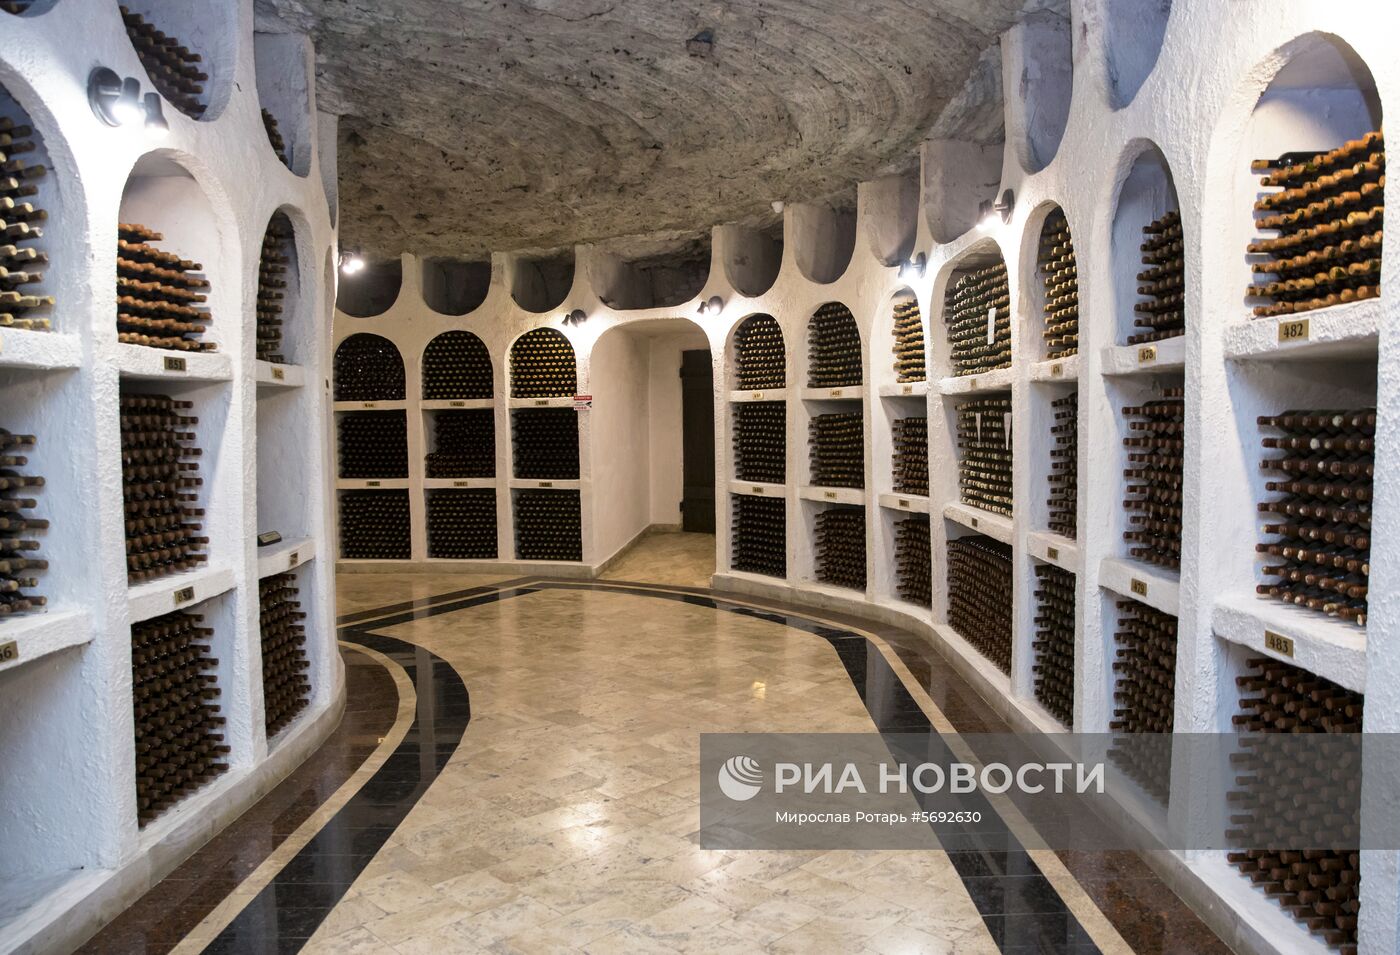 Криковские винные подвалы в Молдавии 